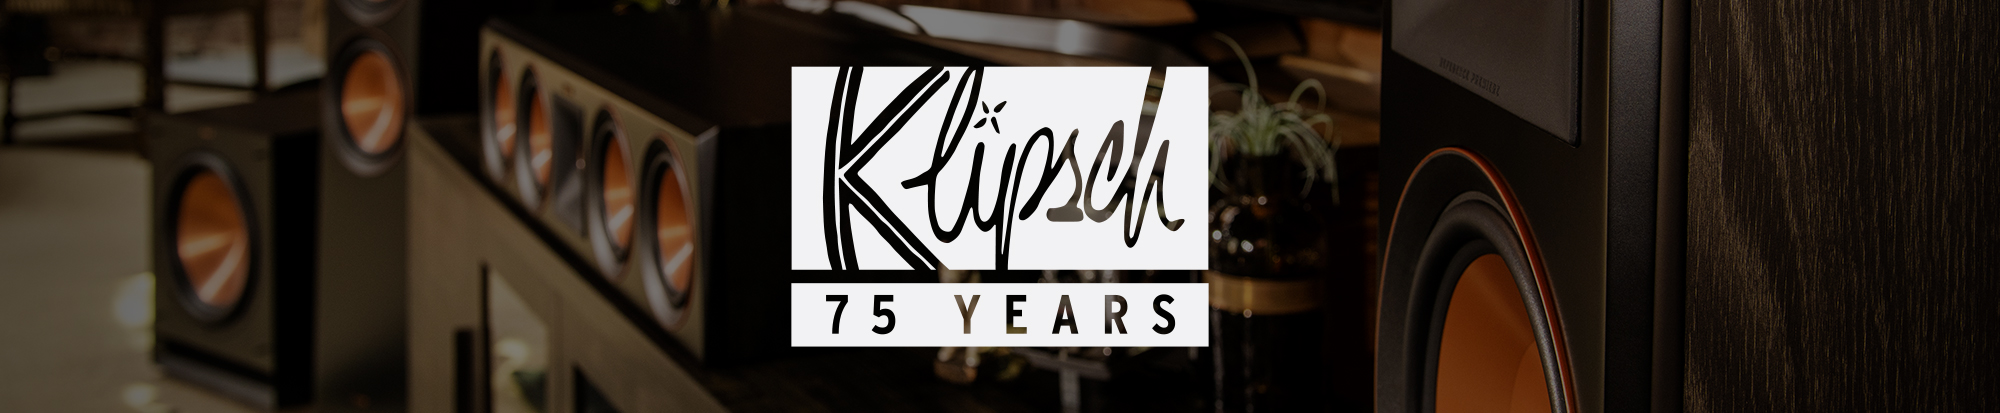 Klipsch for 75 years